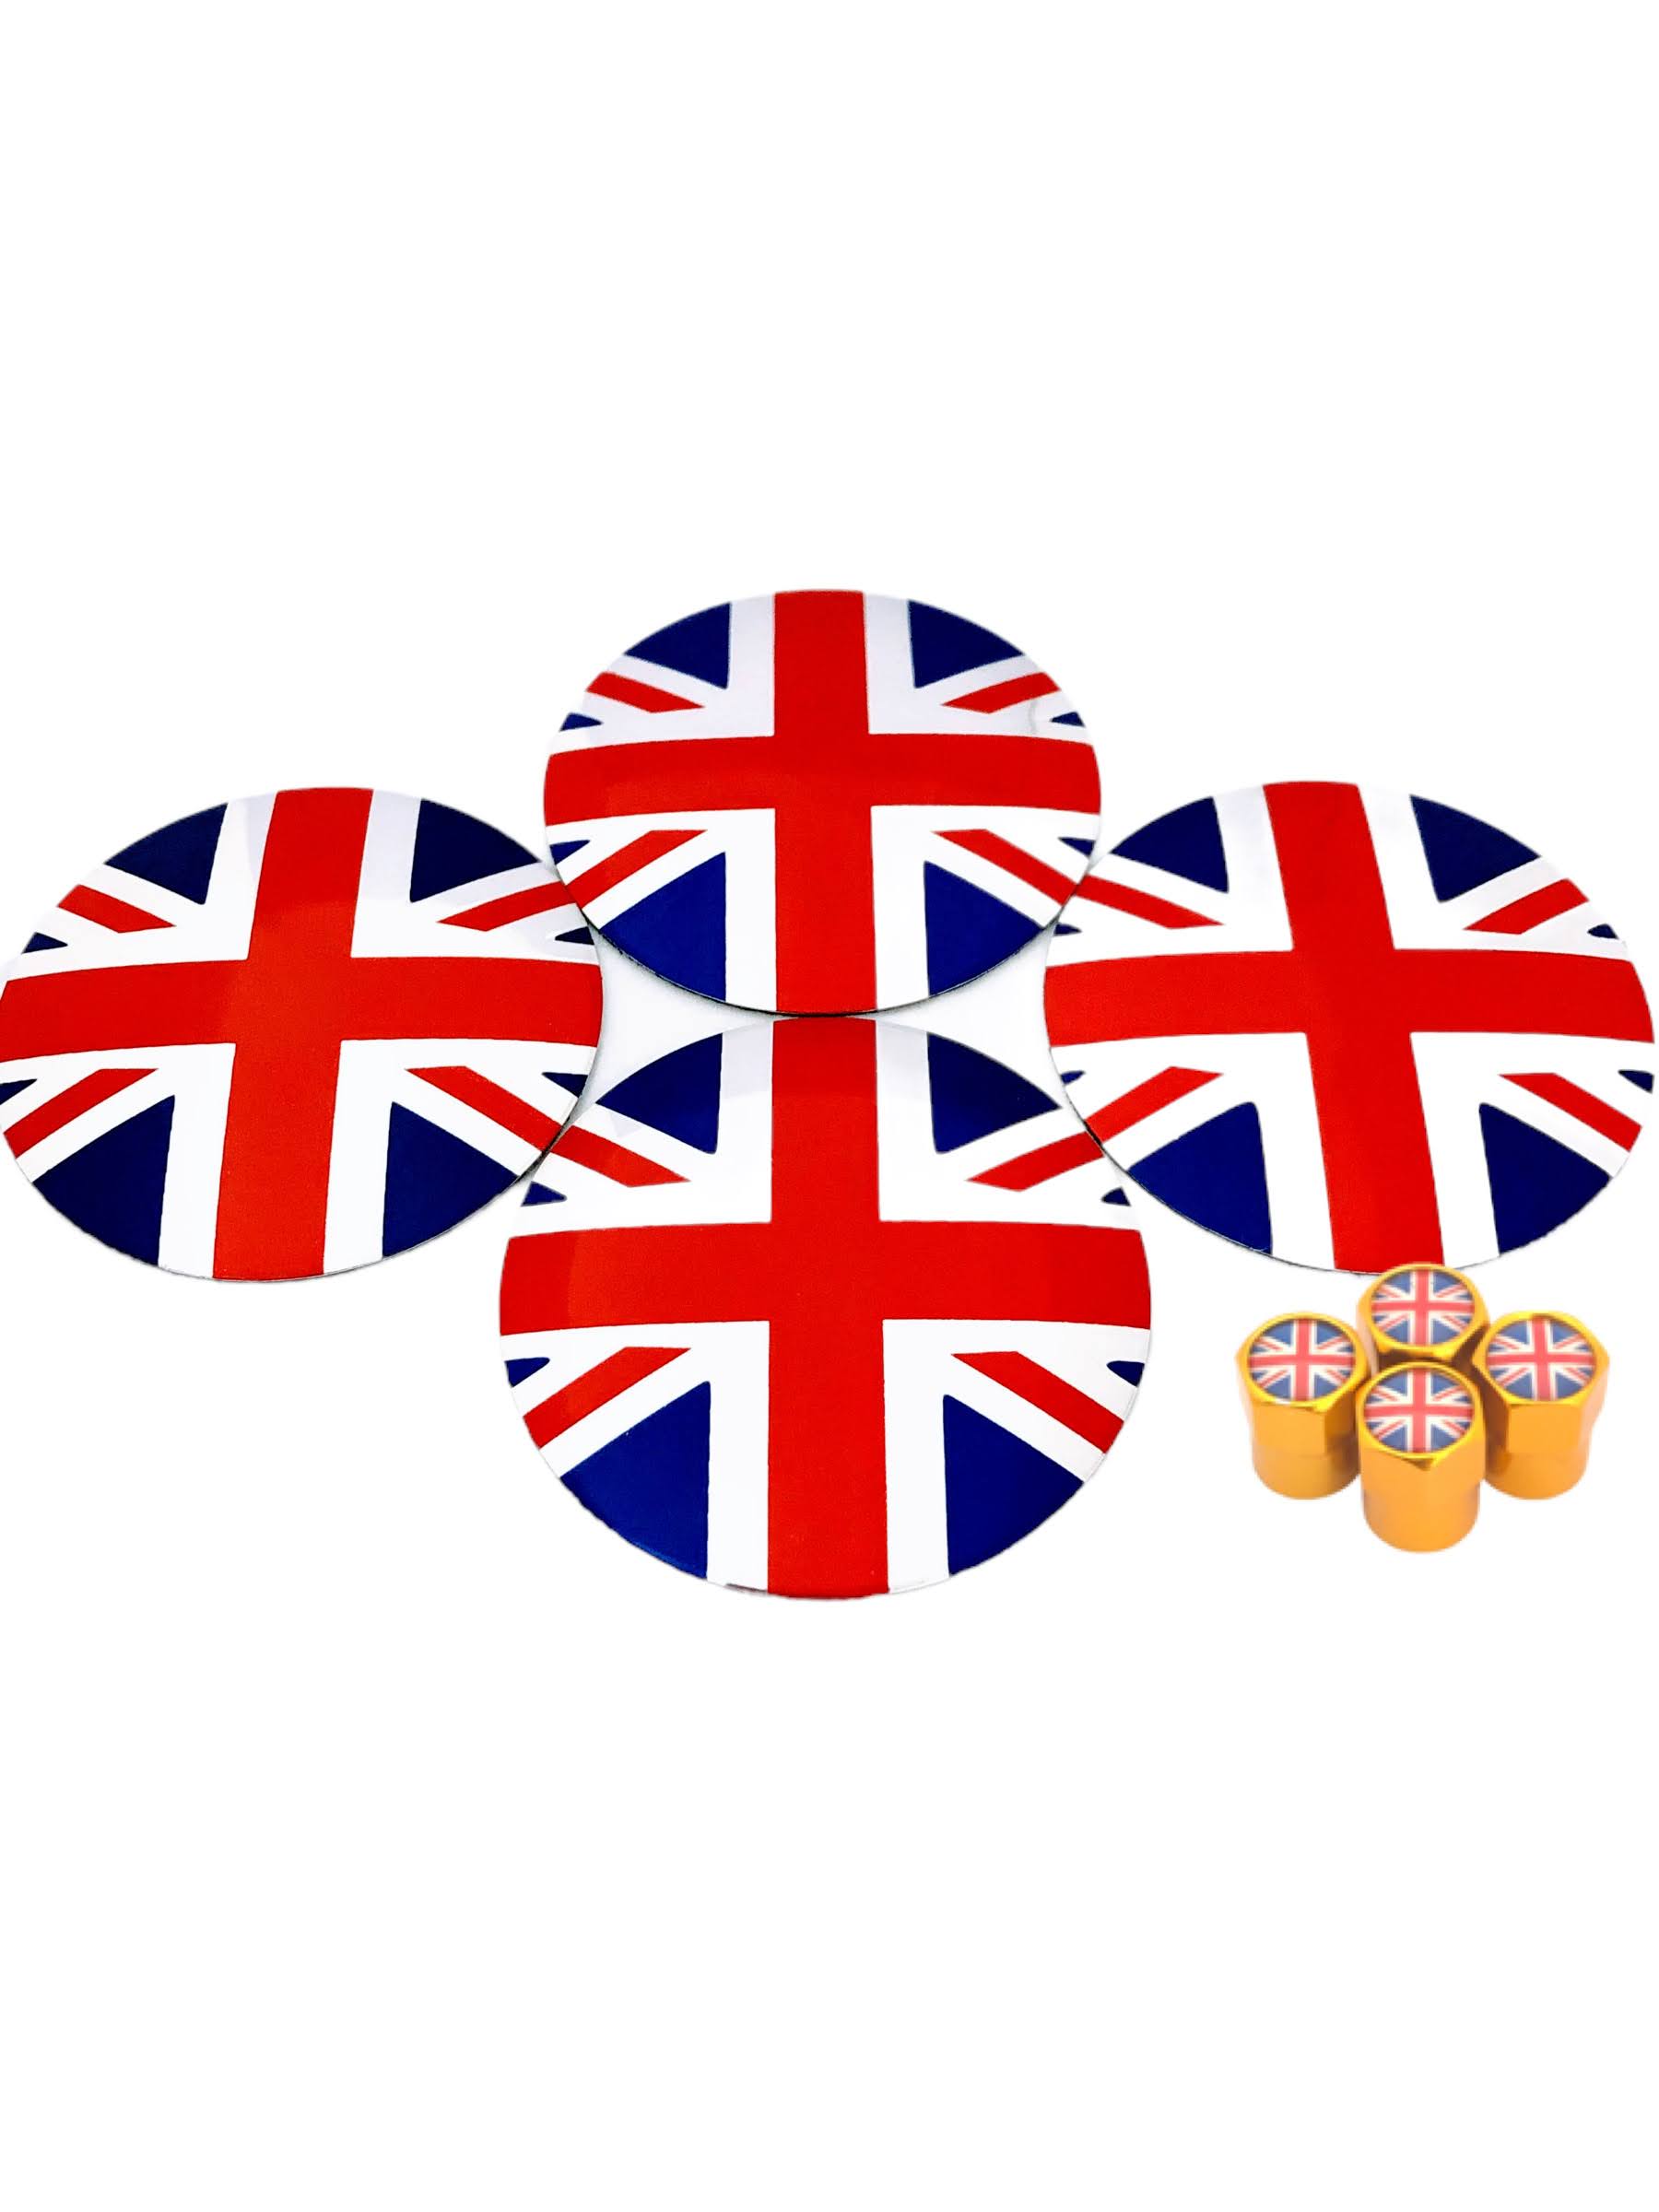 G イギリス 選べるバルブキャップカラー 国旗 キャップ シール センター ステッカー ユニオンジャ...